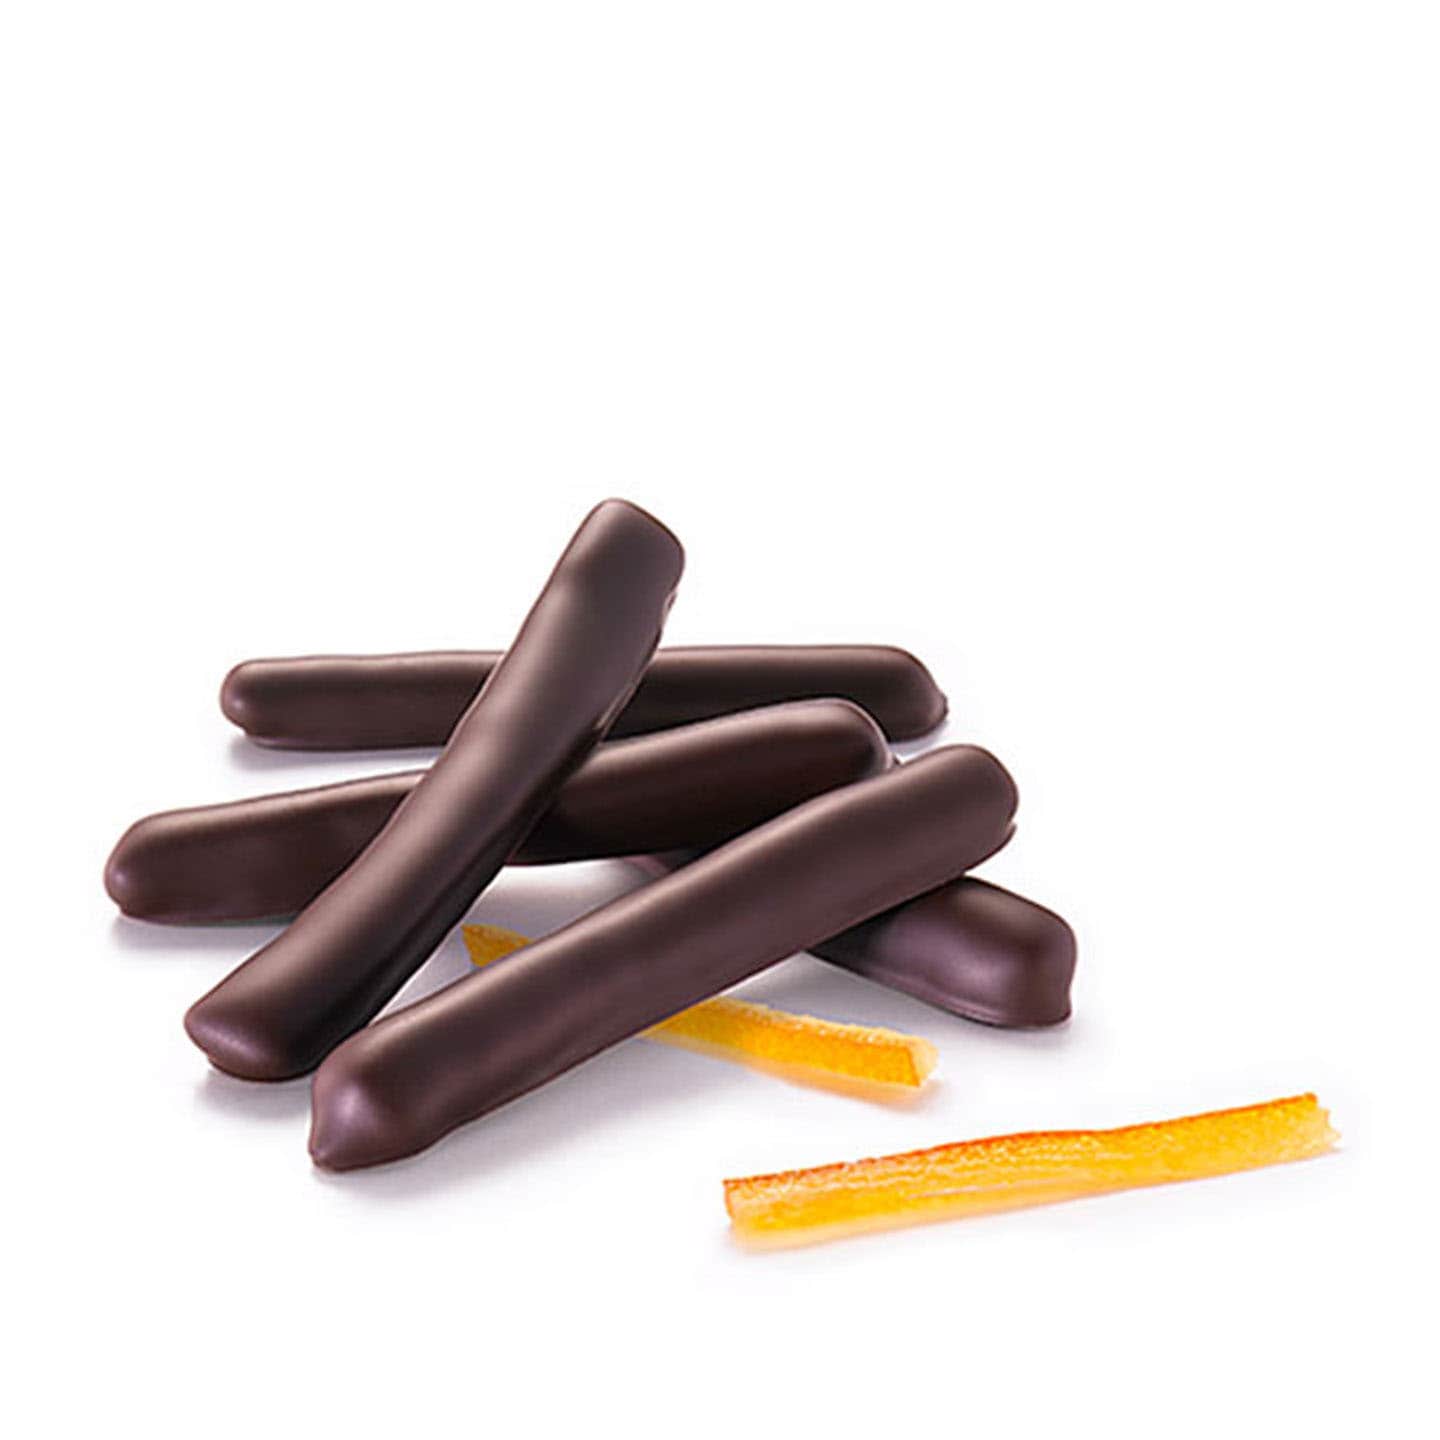 Orangette confite enrobée Chocolat Noir 130g